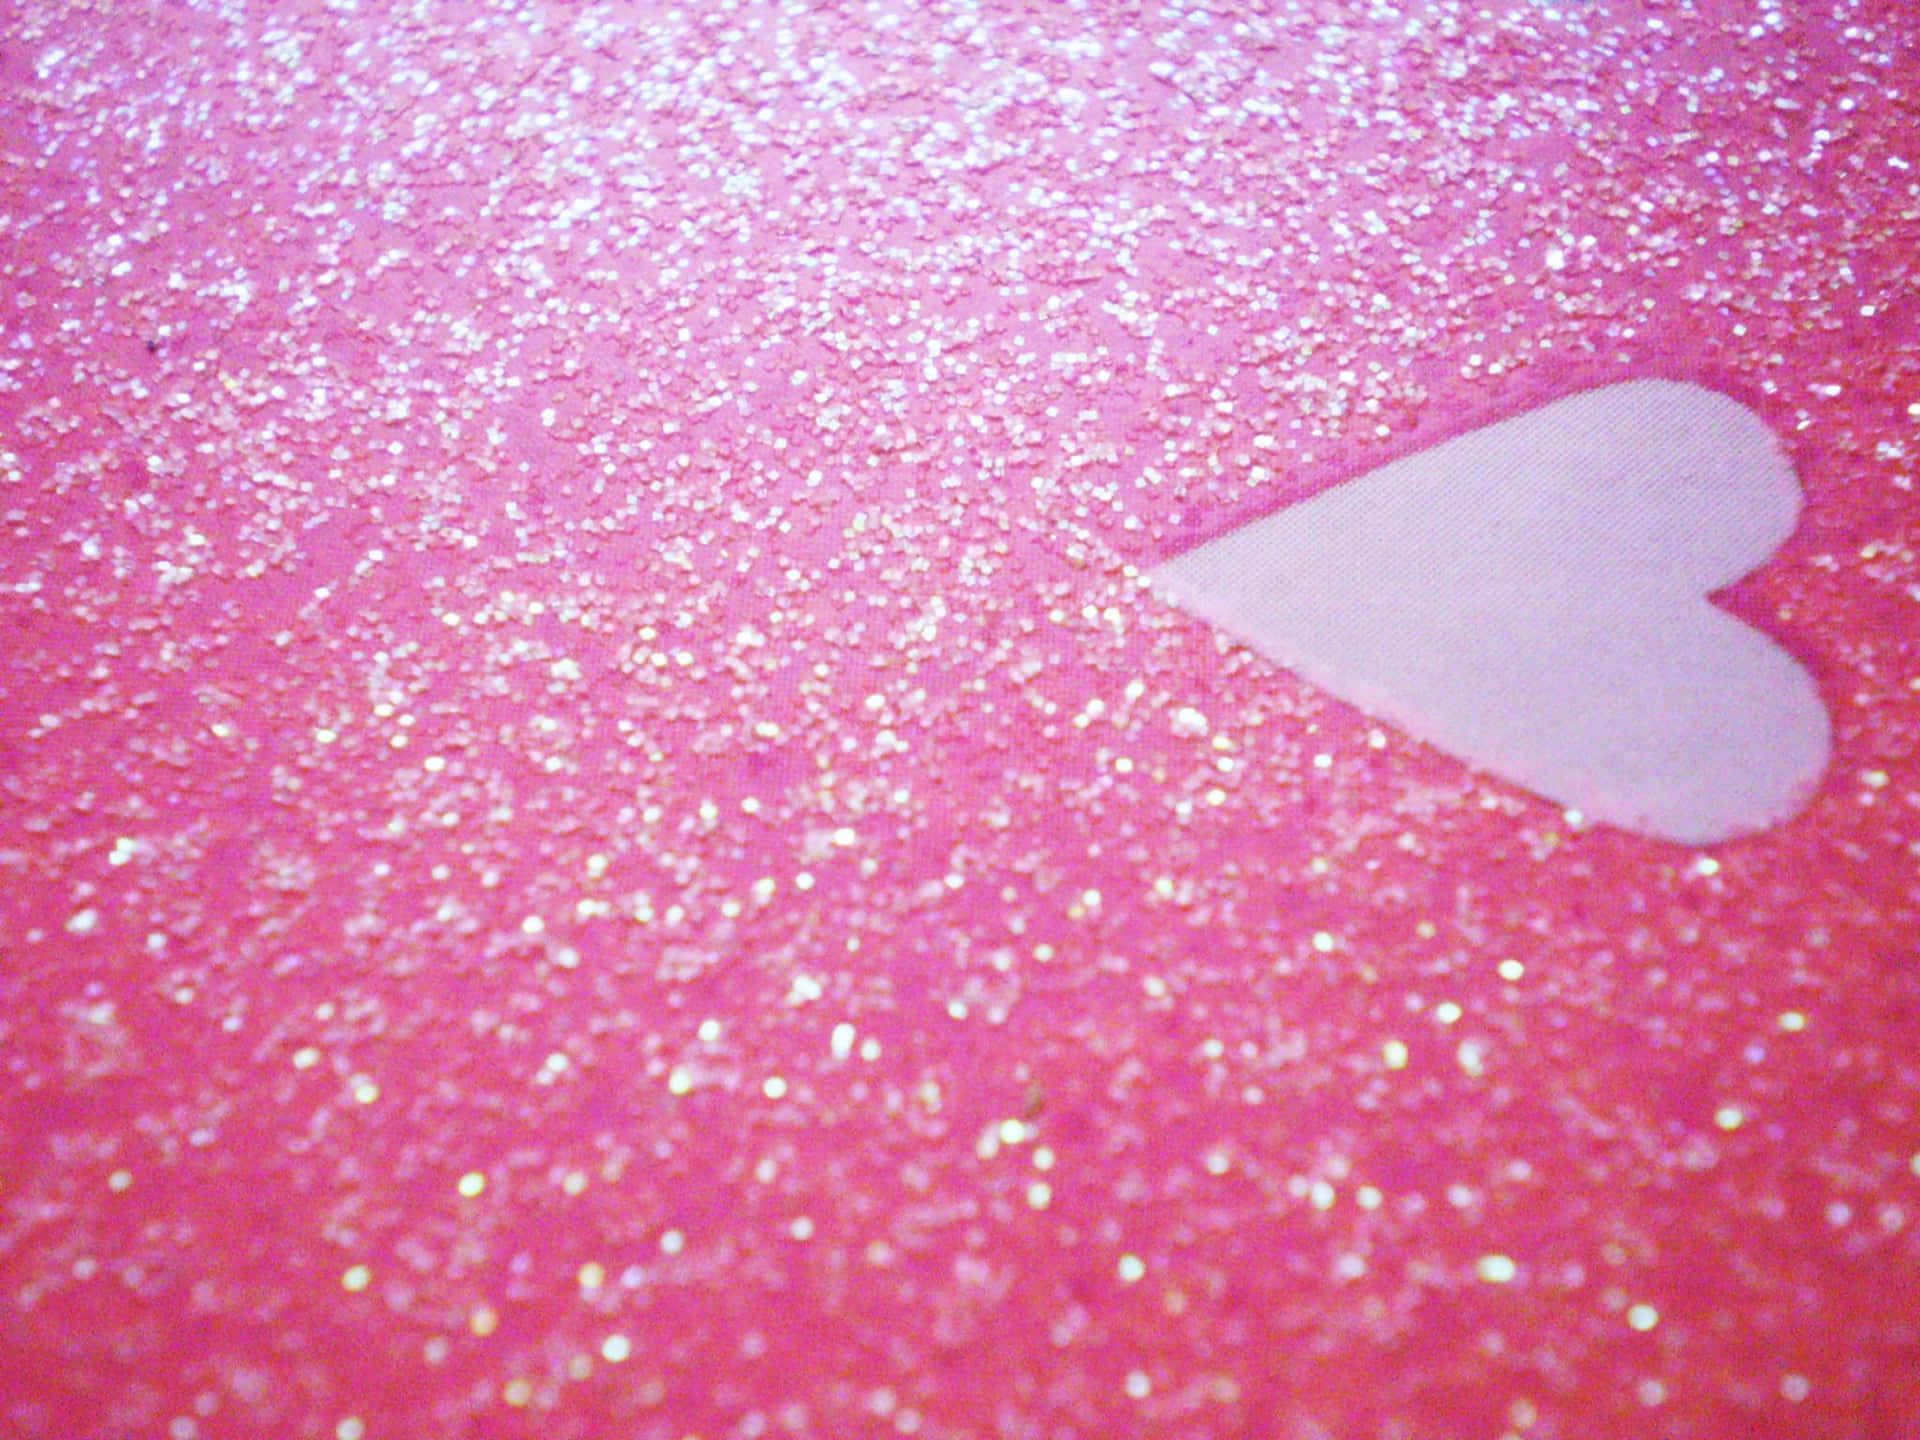 En Glitrende Pink Hjerte Vækker Glæde og Stråler med Begejstring. Wallpaper